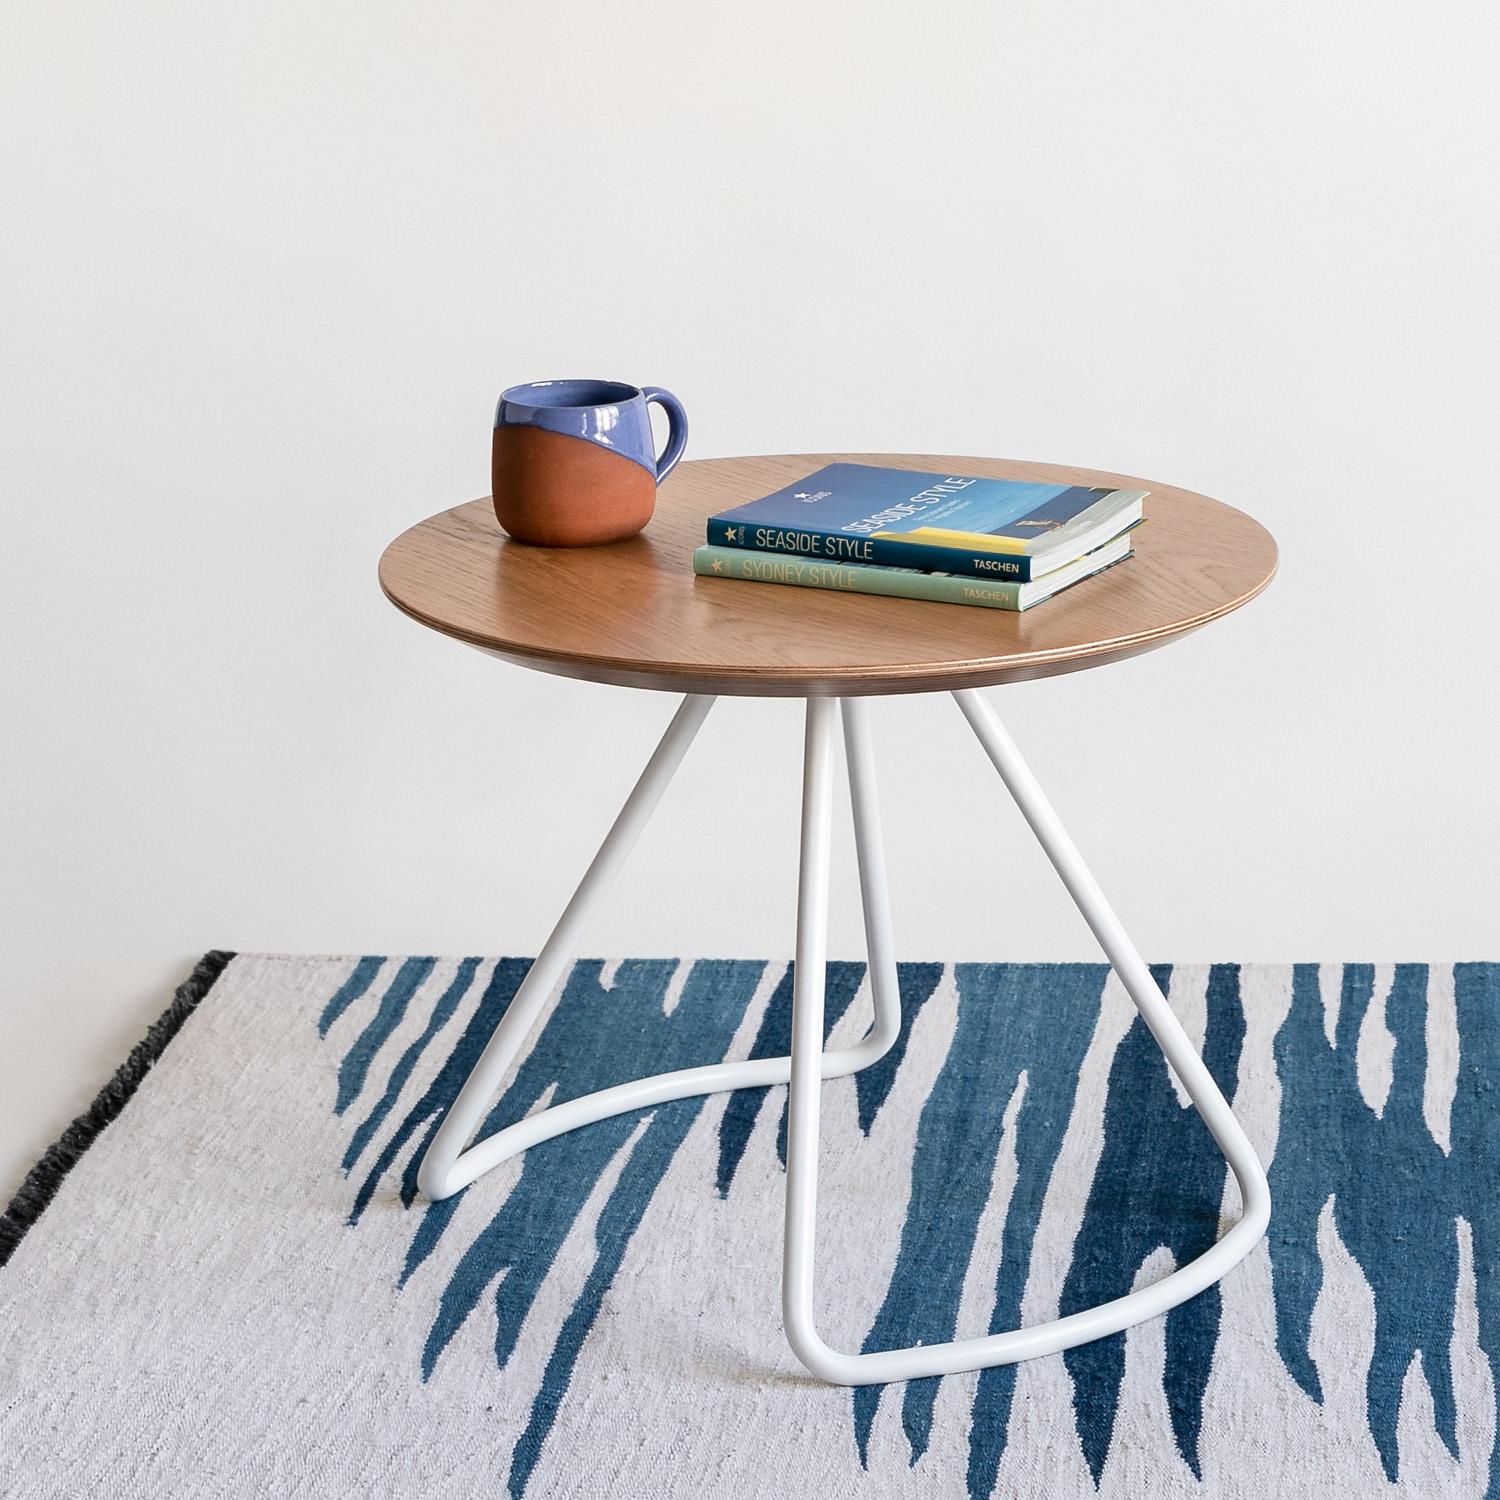 La table basse Sama fait partie de la collection Sama, qui offre une fonctionnalité grâce à des formes simples, mais frappantes et sculpturales qui ajoutent une touche unique et élégante à son environnement.

Inspiré par la poésie des costumes